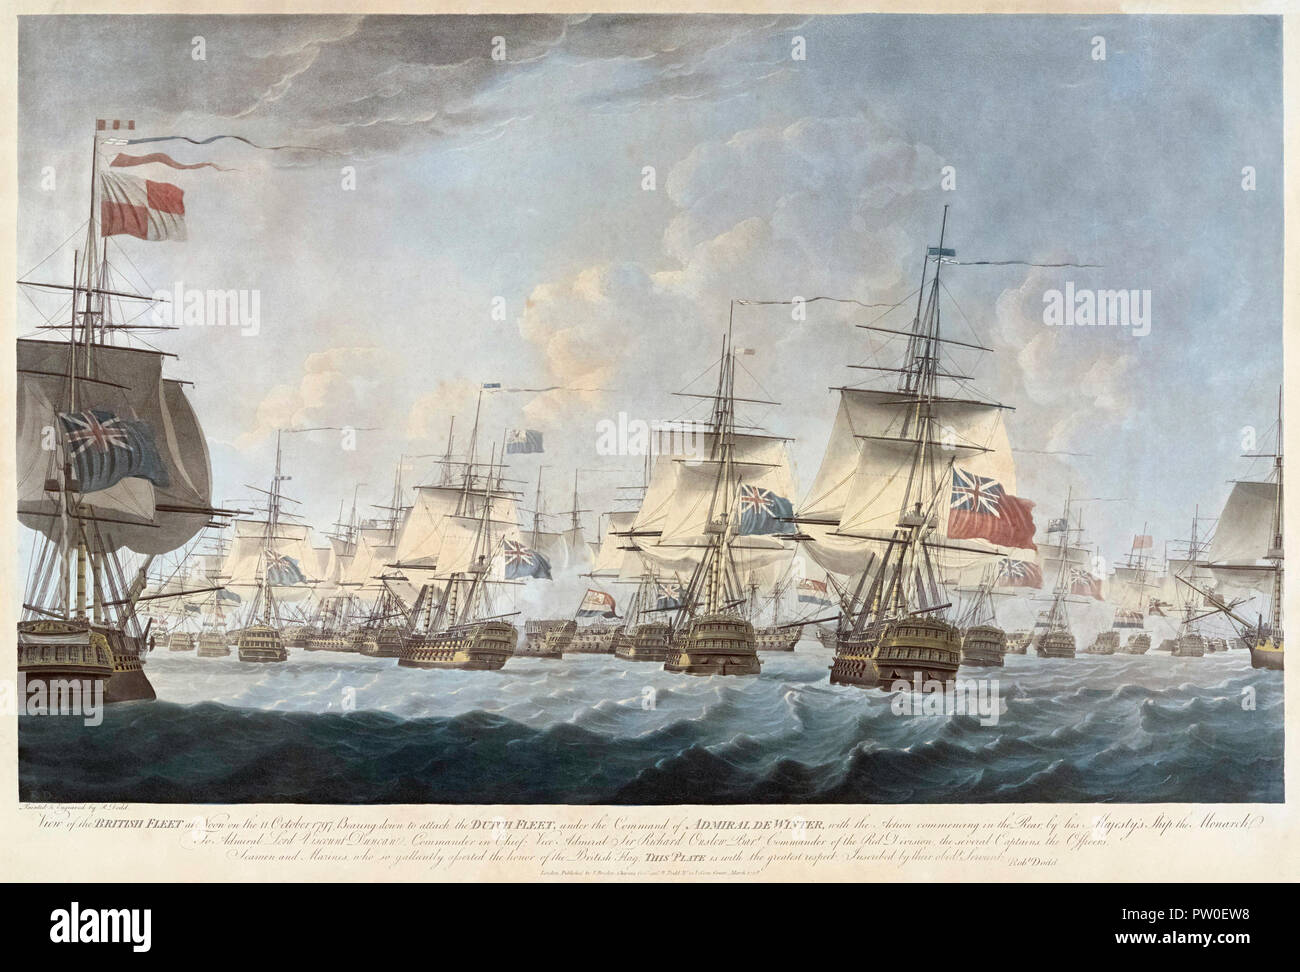 Die Schlacht von Camperdown Kamperduin in Niederländisch, 11. Oktober 1797. Die britische Nordsee Flotte unter Admiral Adam Duncan trägt nach unten auf die Batavische Marine Flotte unter Vizeadmiral Jan de Winter. Nach dem Drucken im Jahr 1798 veröffentlicht. Stockfoto